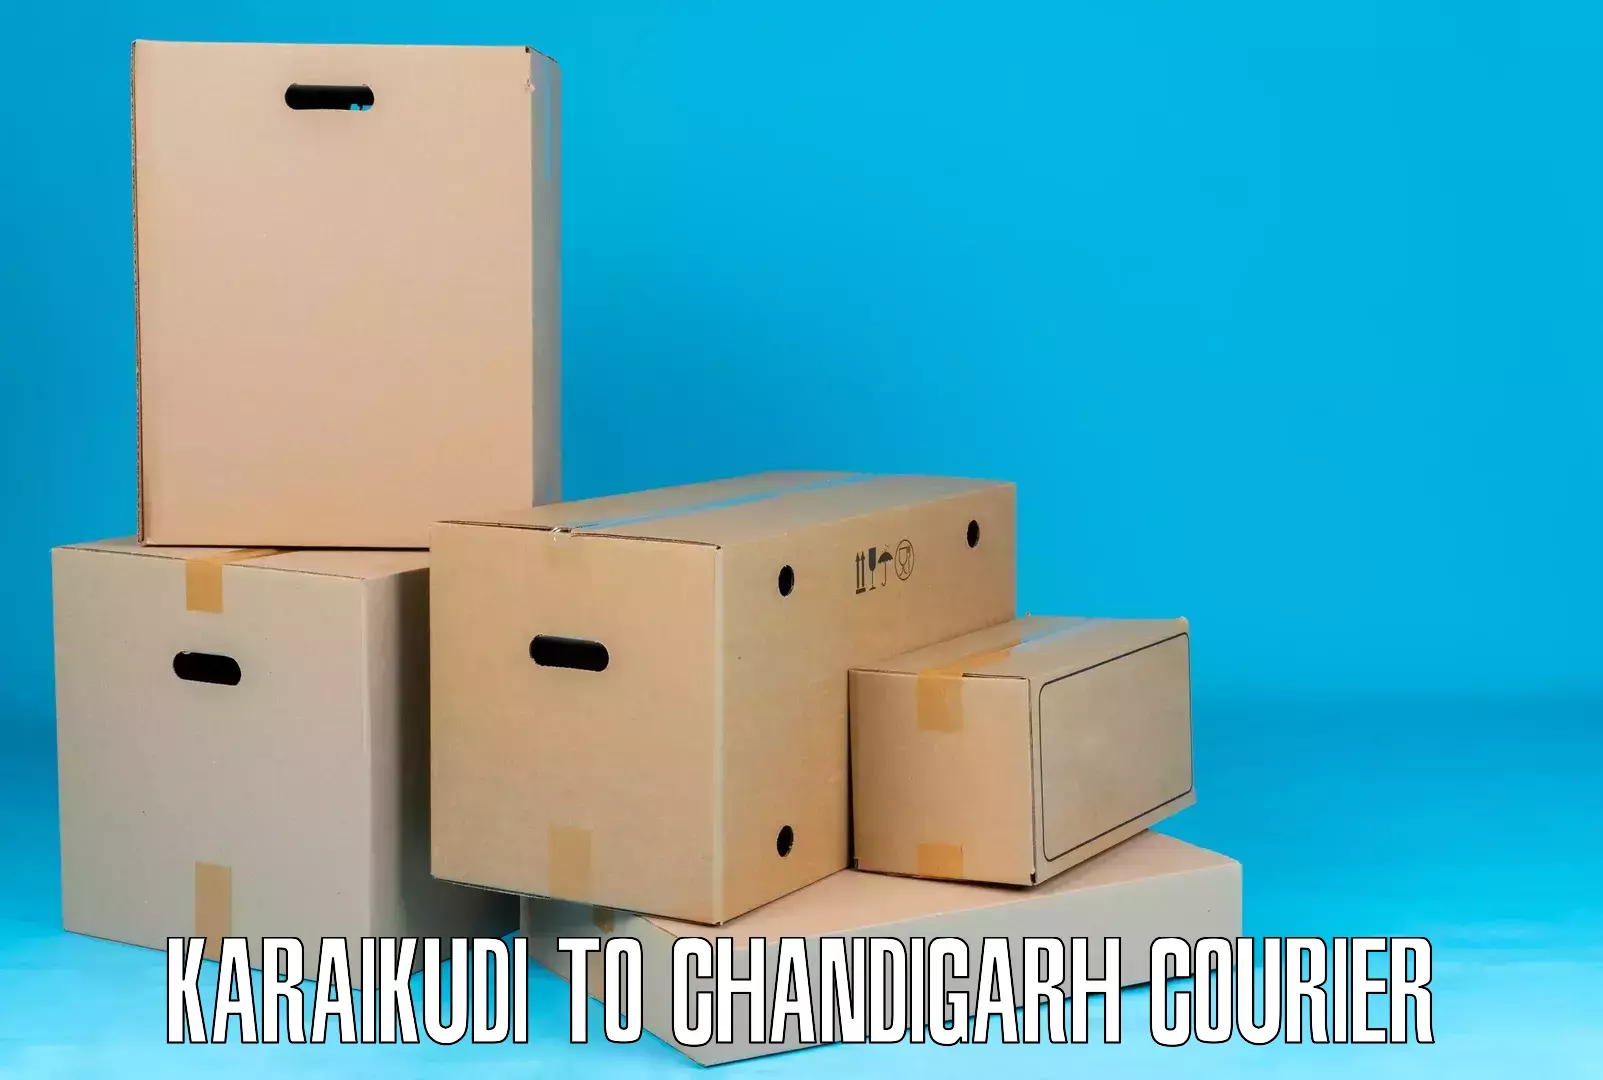 Express delivery solutions Karaikudi to Kharar